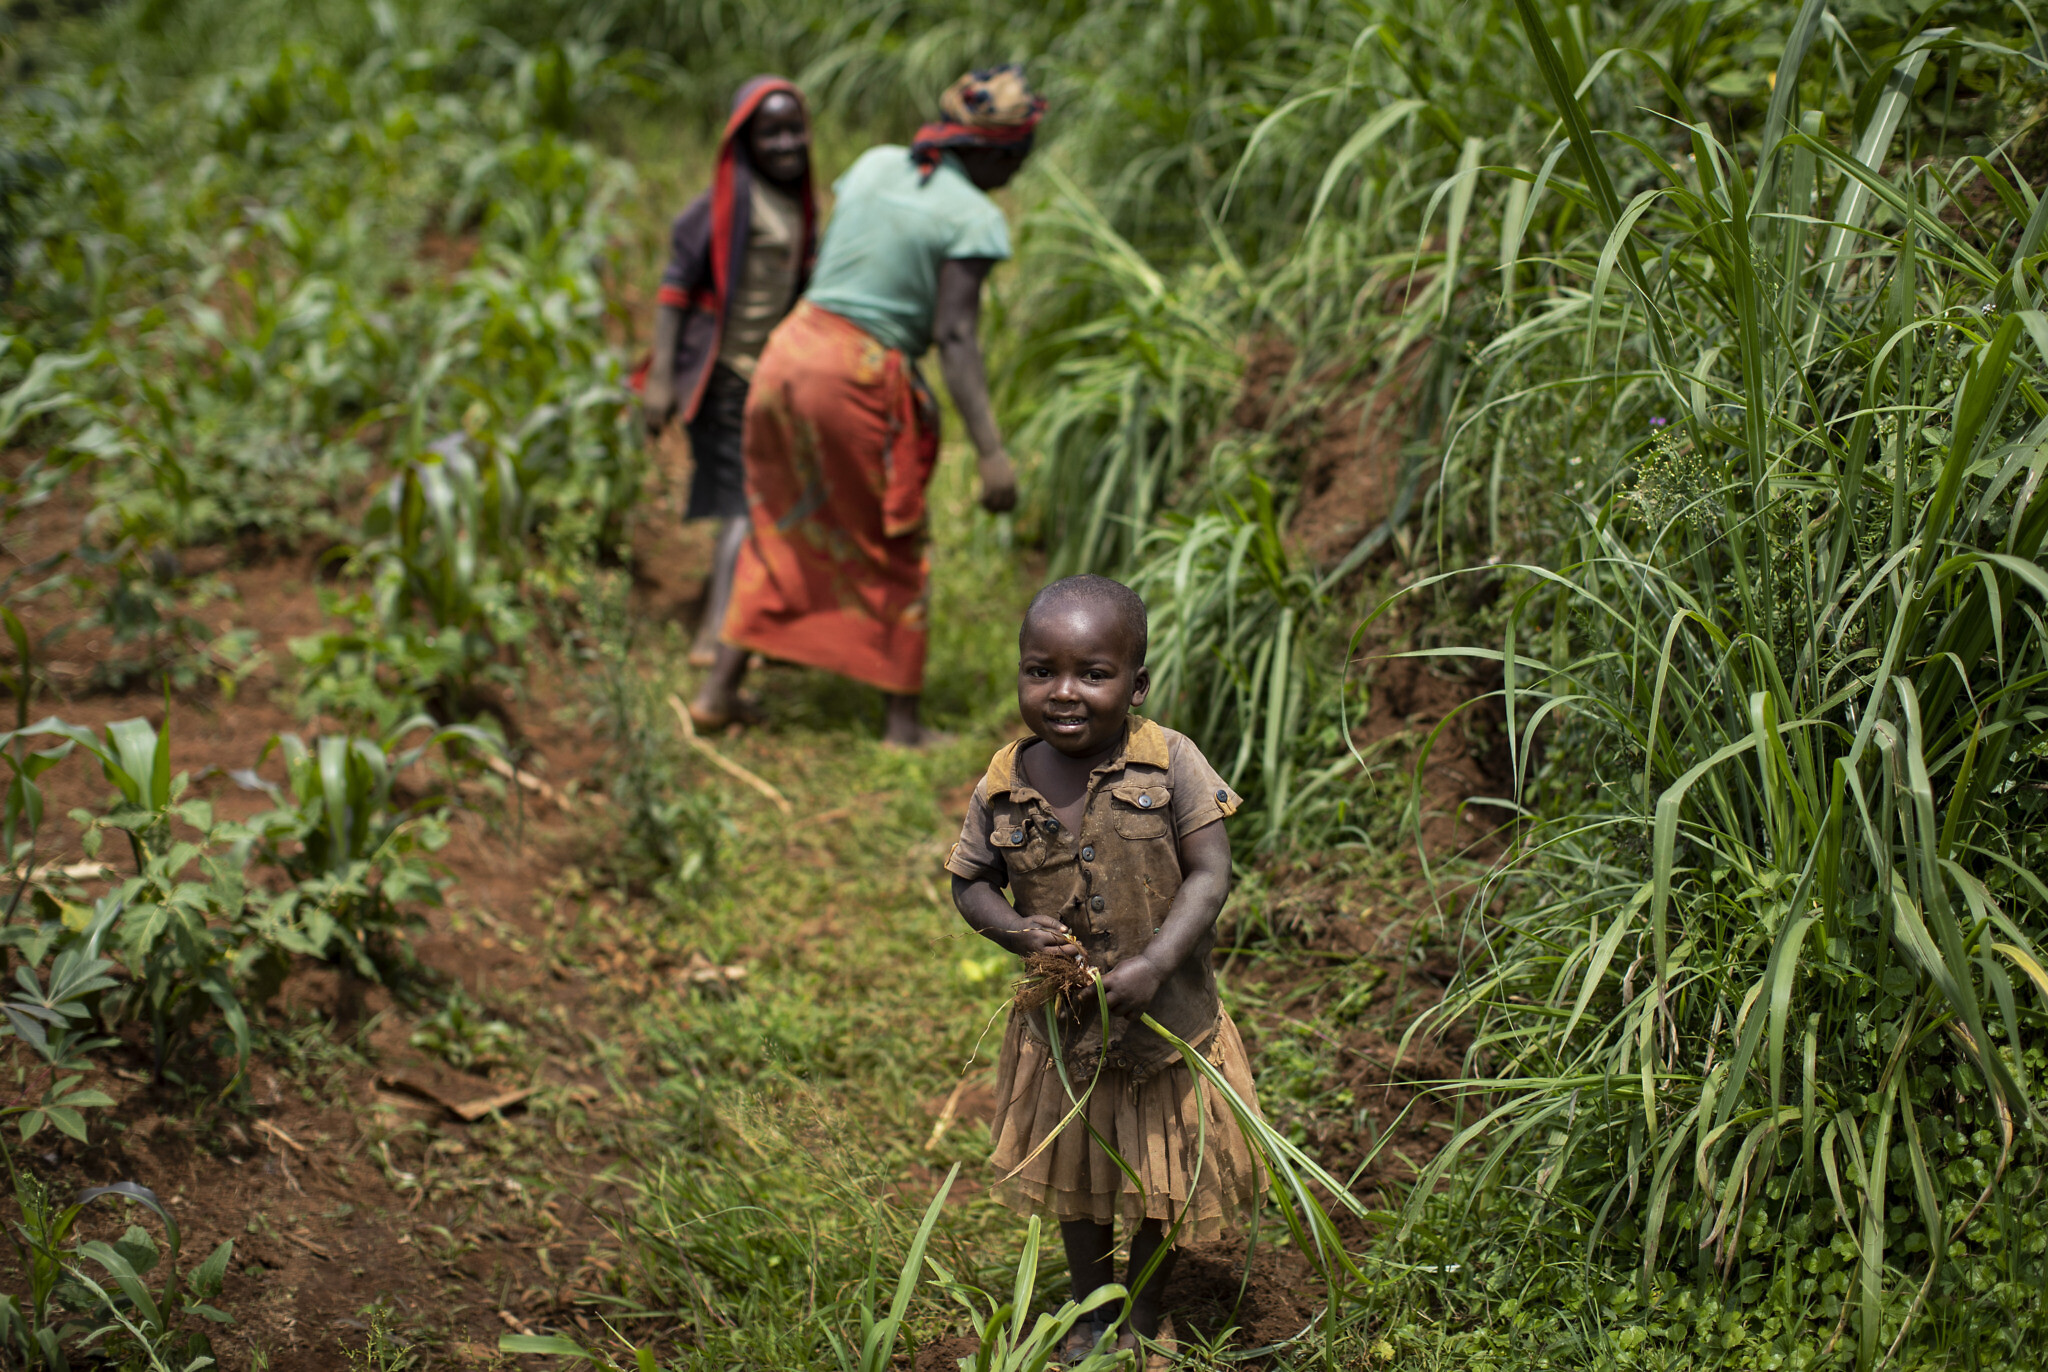 אילוסטרציה, ילדה עוזרת לקרוביה העובדים בשדות במערב רואנדה, נובמבר 2019 (צילום: AP Photo/Ben Curtis)